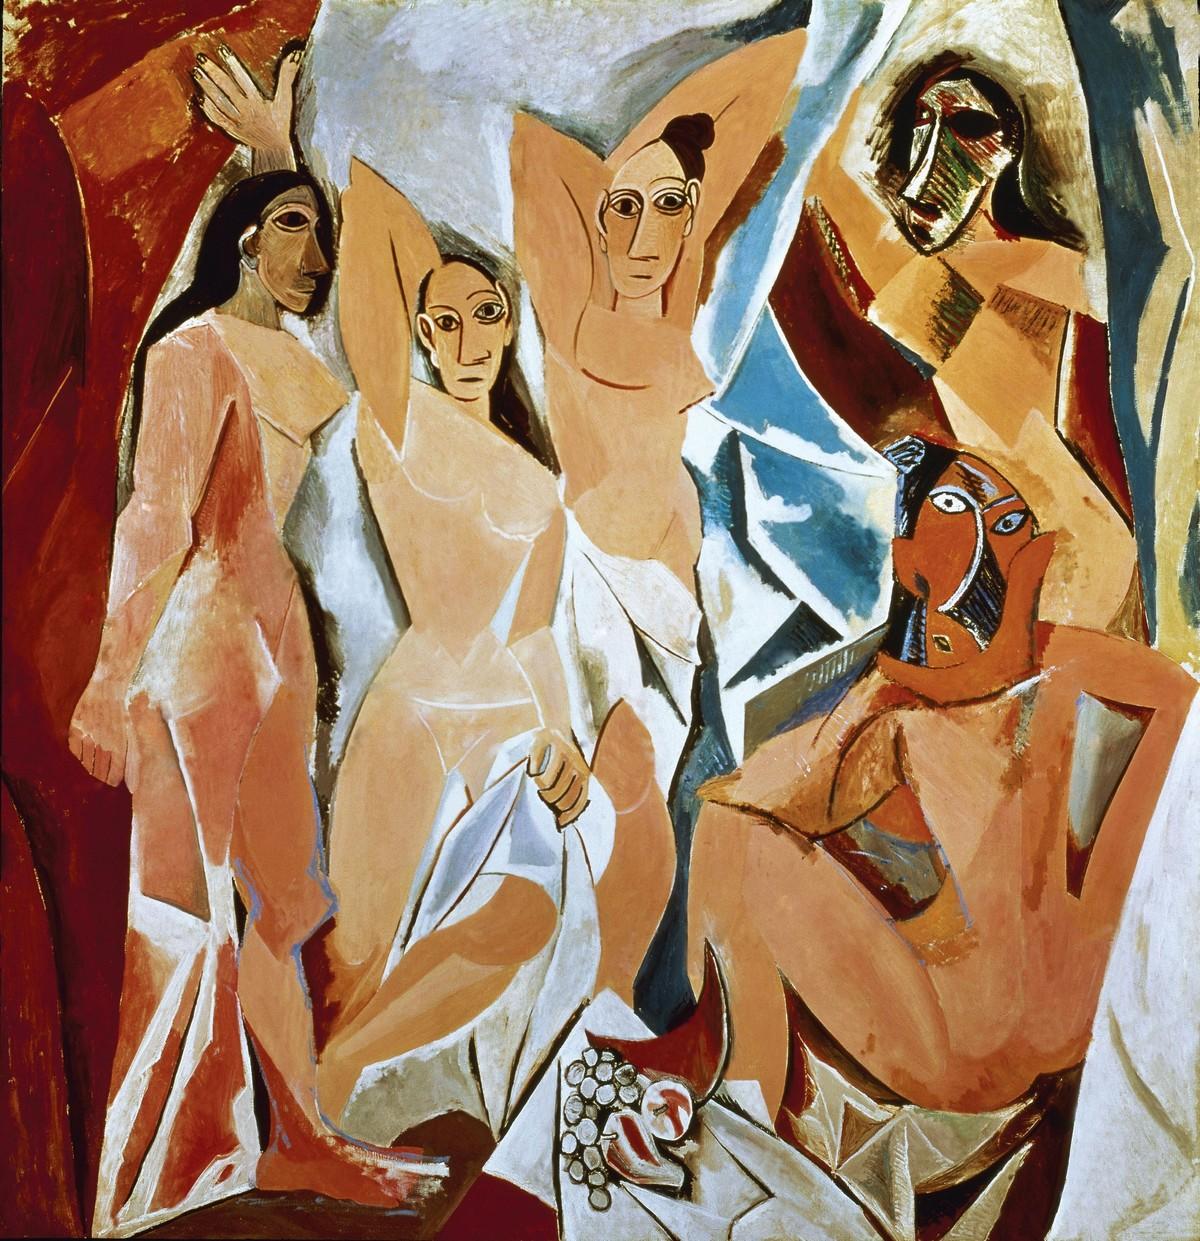 Pablo Picasso, Les Demoiselles d'Avignon, 1907, huile sur toile, 243 x 233 cm (the Museum of Modern Art, New York).